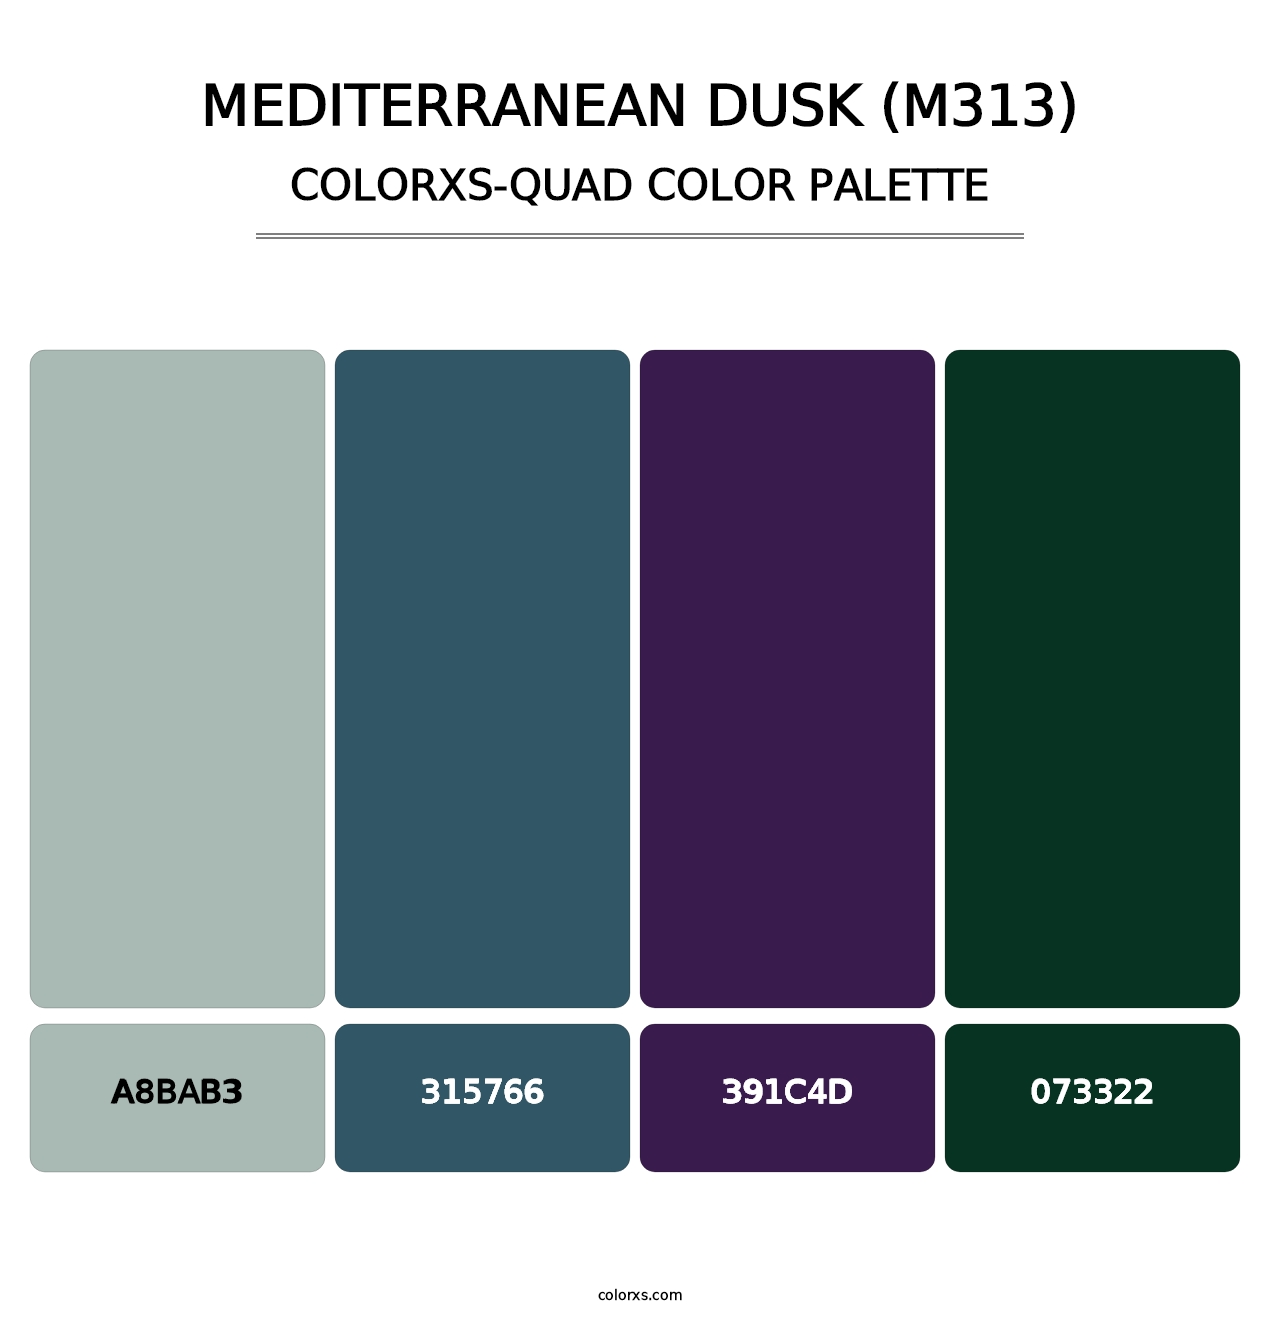 Mediterranean Dusk (M313) - Colorxs Quad Palette